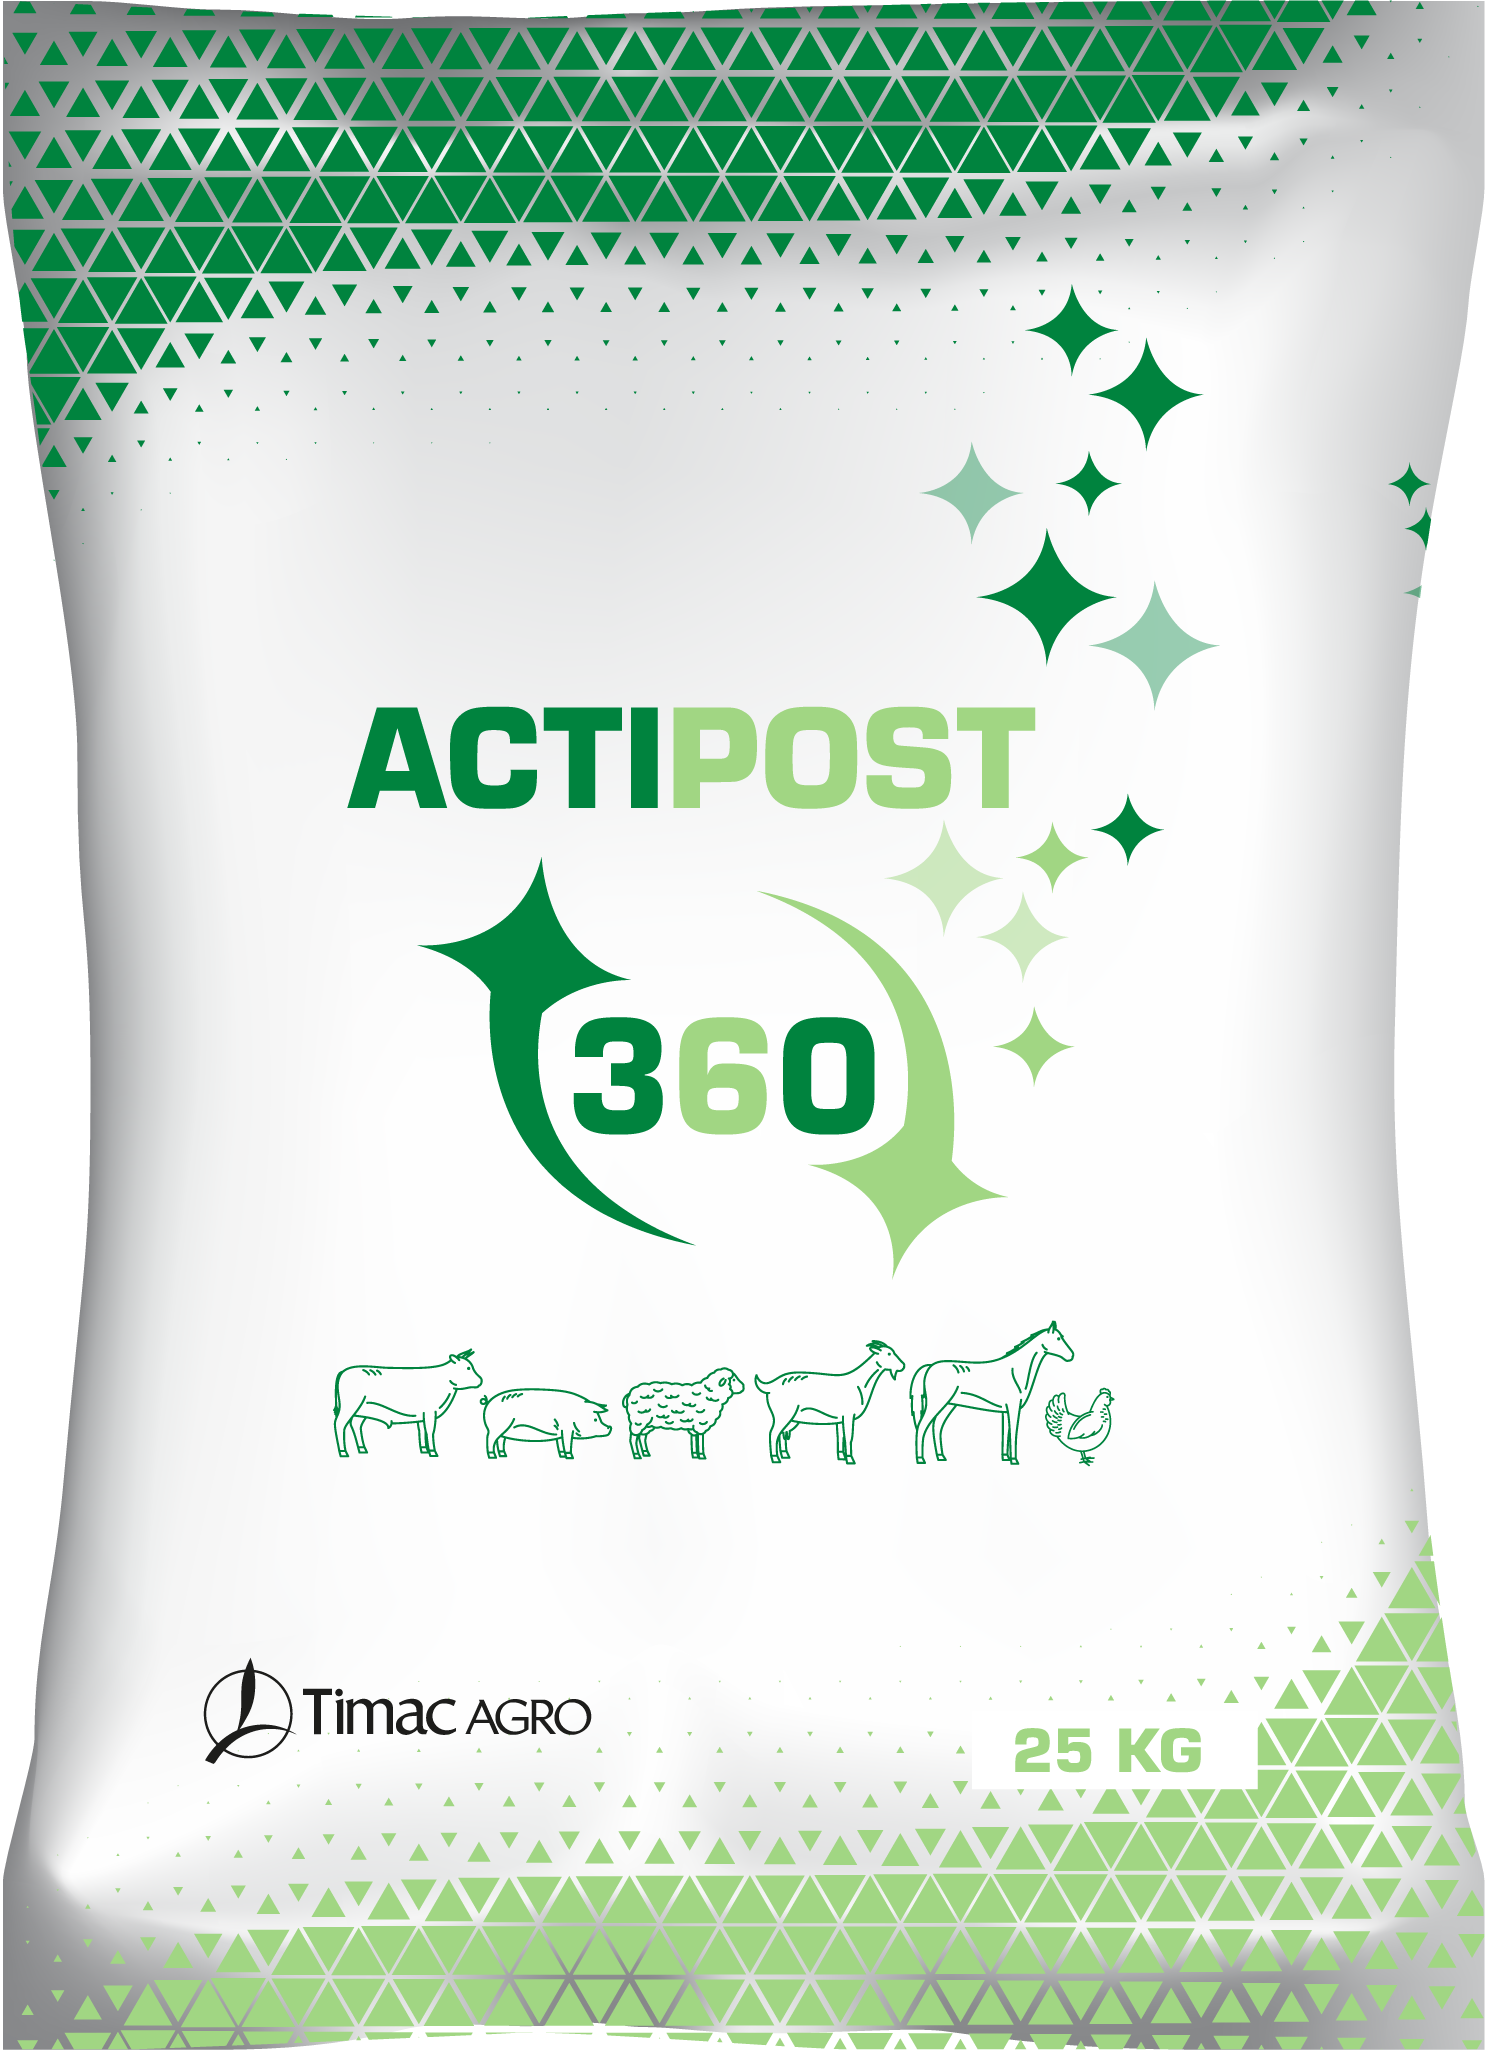 ACTIPOST 360